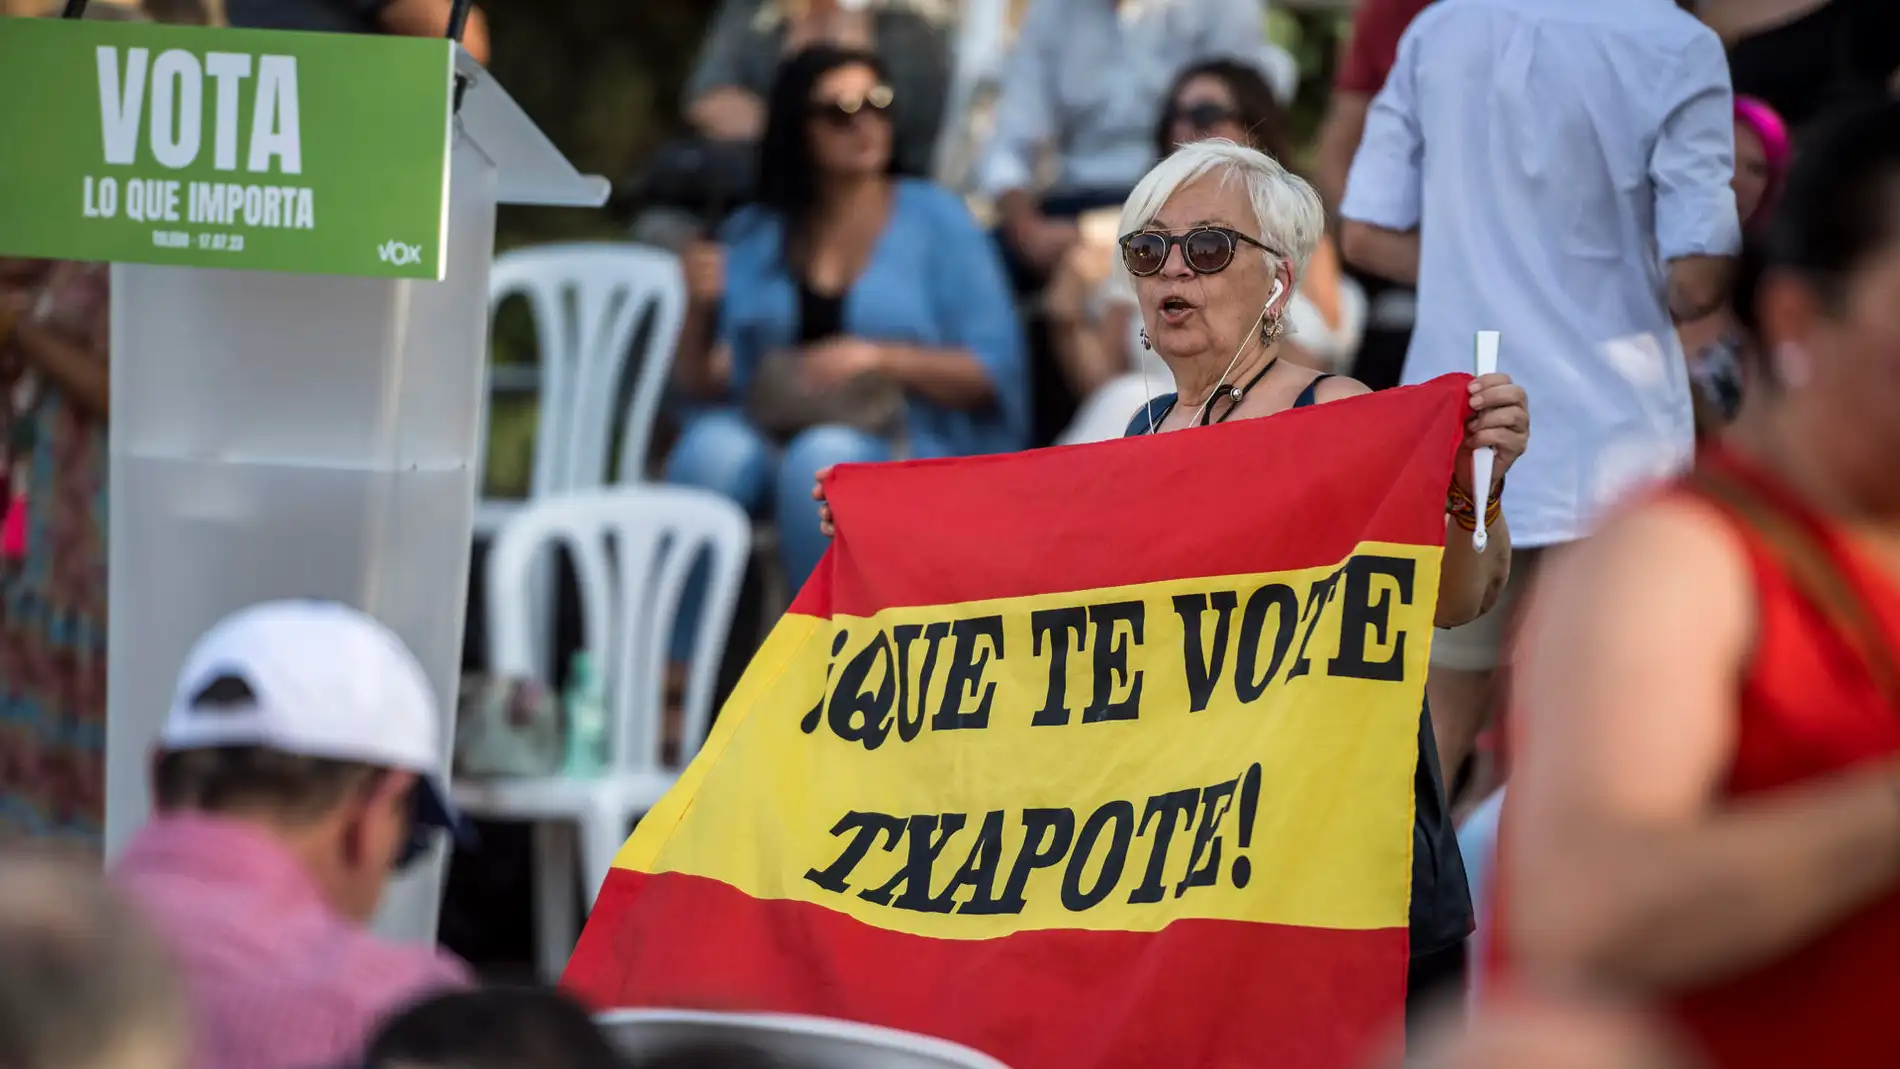 Una mujer esgrime una bandera con el lema "Que te vote Txapote" en un acto de VOX en Toledo